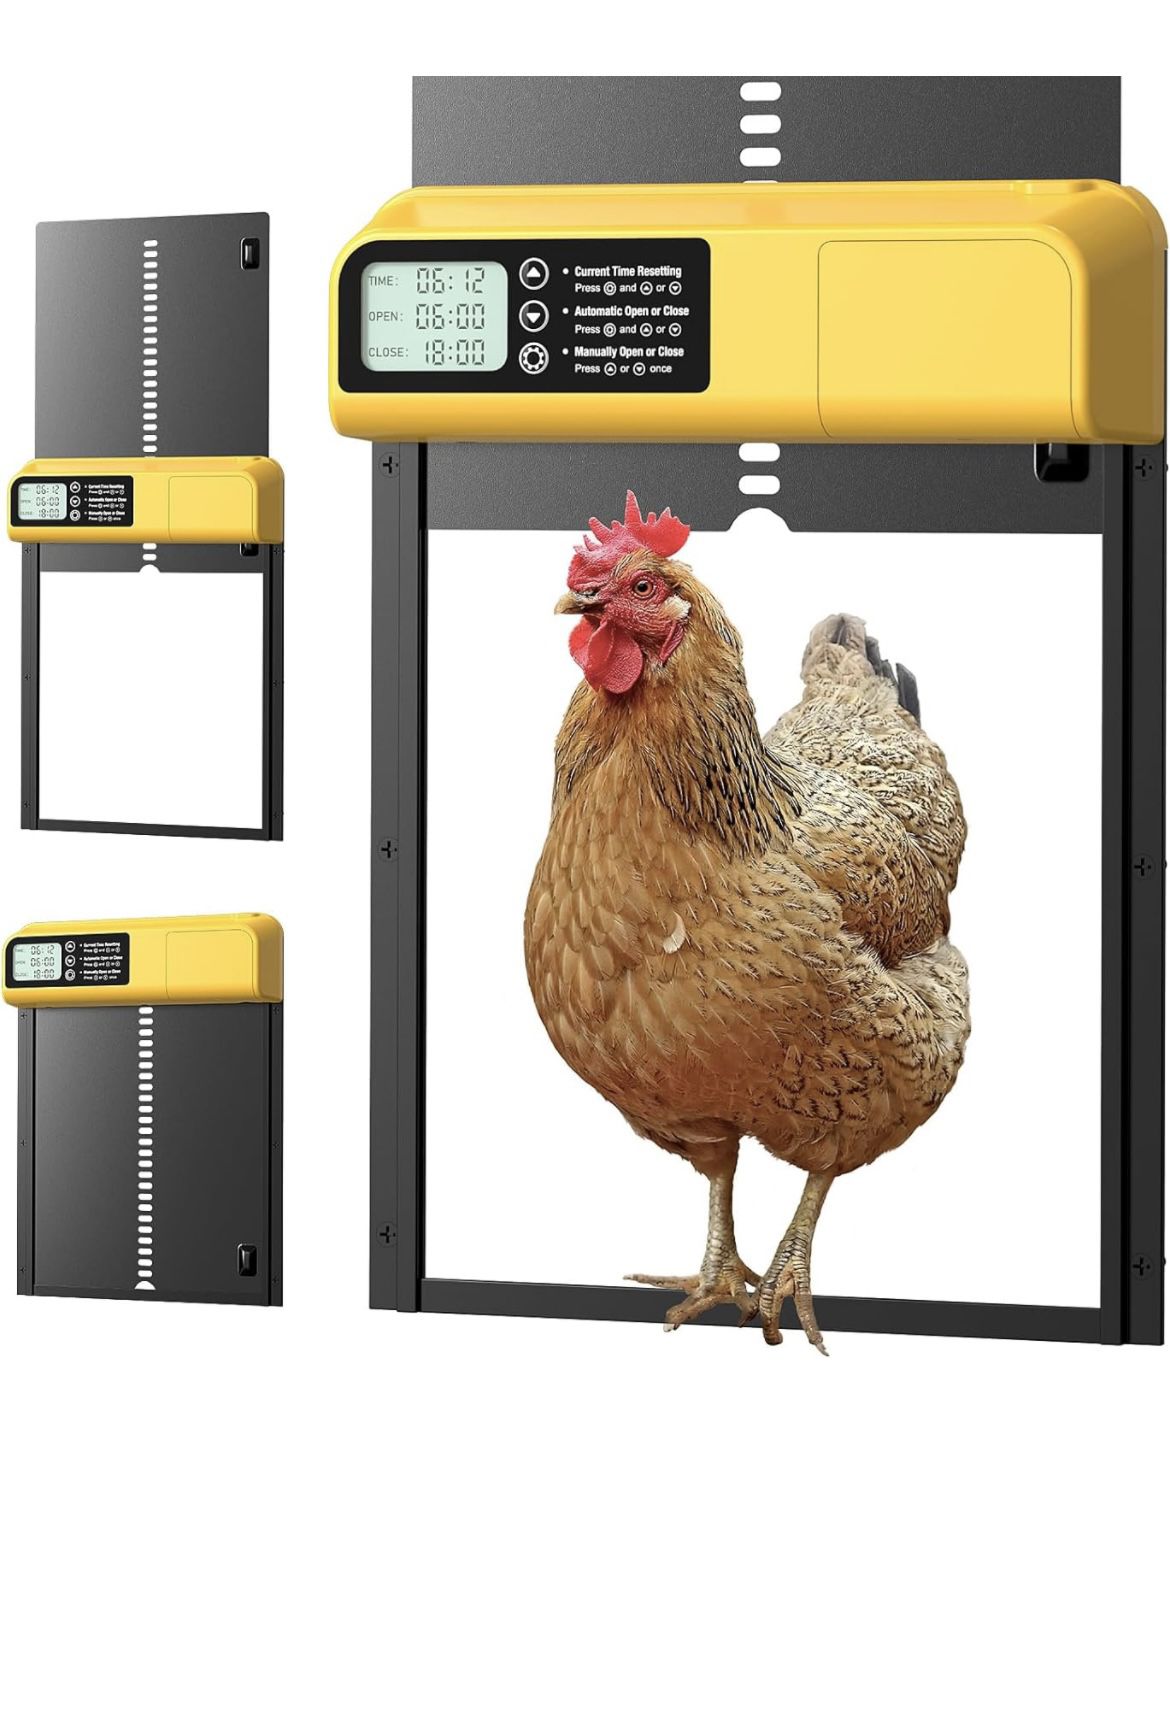 Automatic Chicken Coop Door, Large Chicken Coop Door with Smart Timer & LCD Display, Aluminum Chicken Door with Anti-Pinch Sensor & Low Battery Alert 